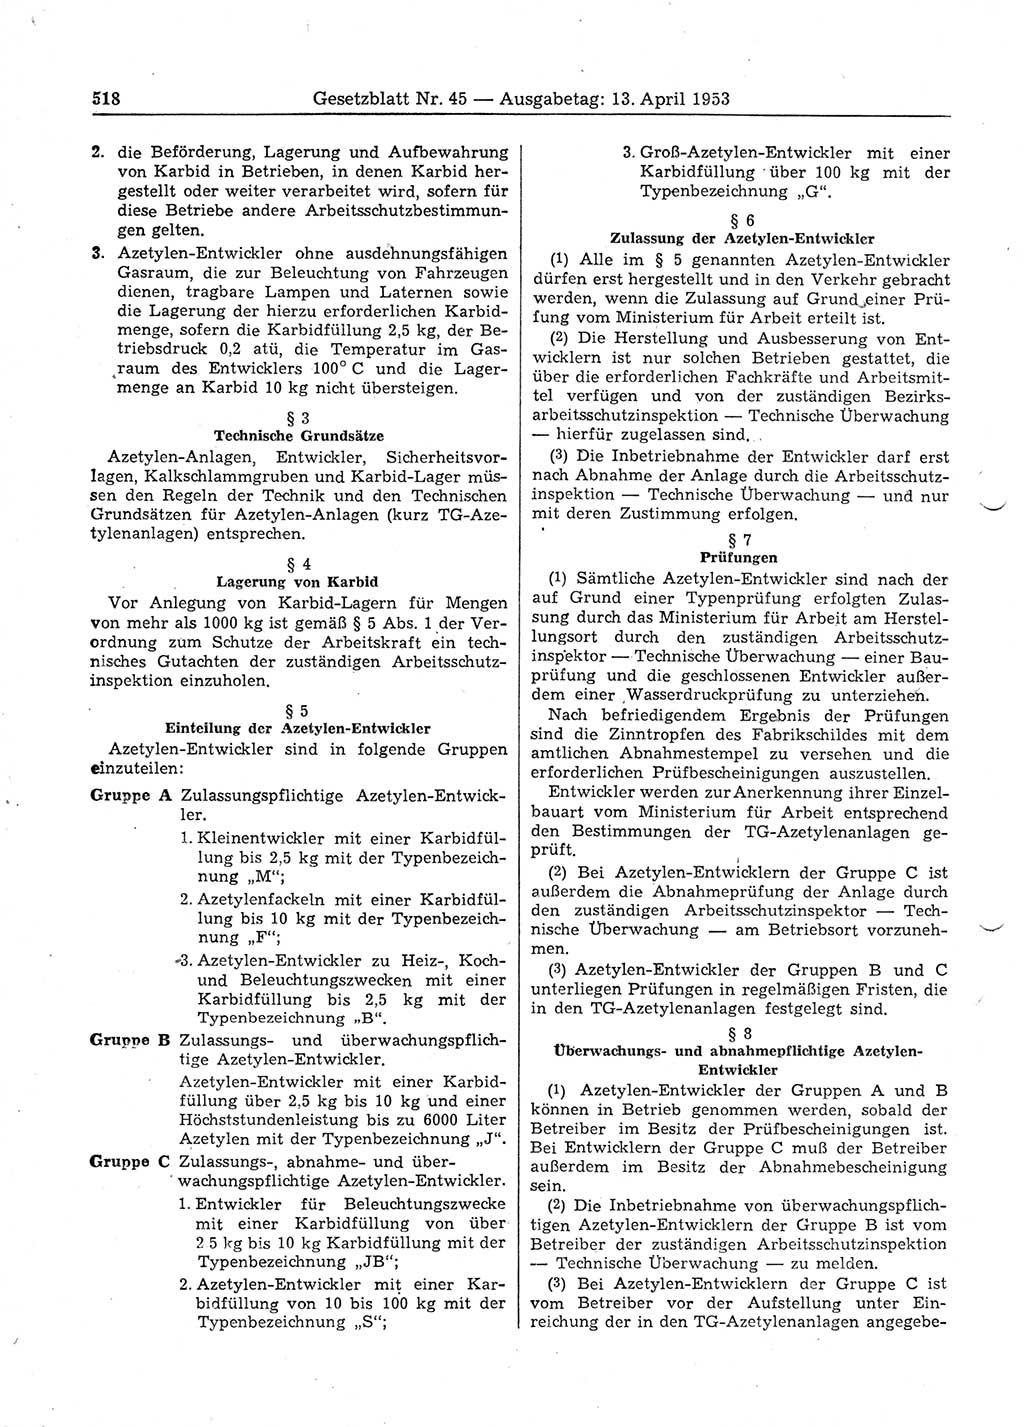 Gesetzblatt (GBl.) der Deutschen Demokratischen Republik (DDR) 1953, Seite 518 (GBl. DDR 1953, S. 518)